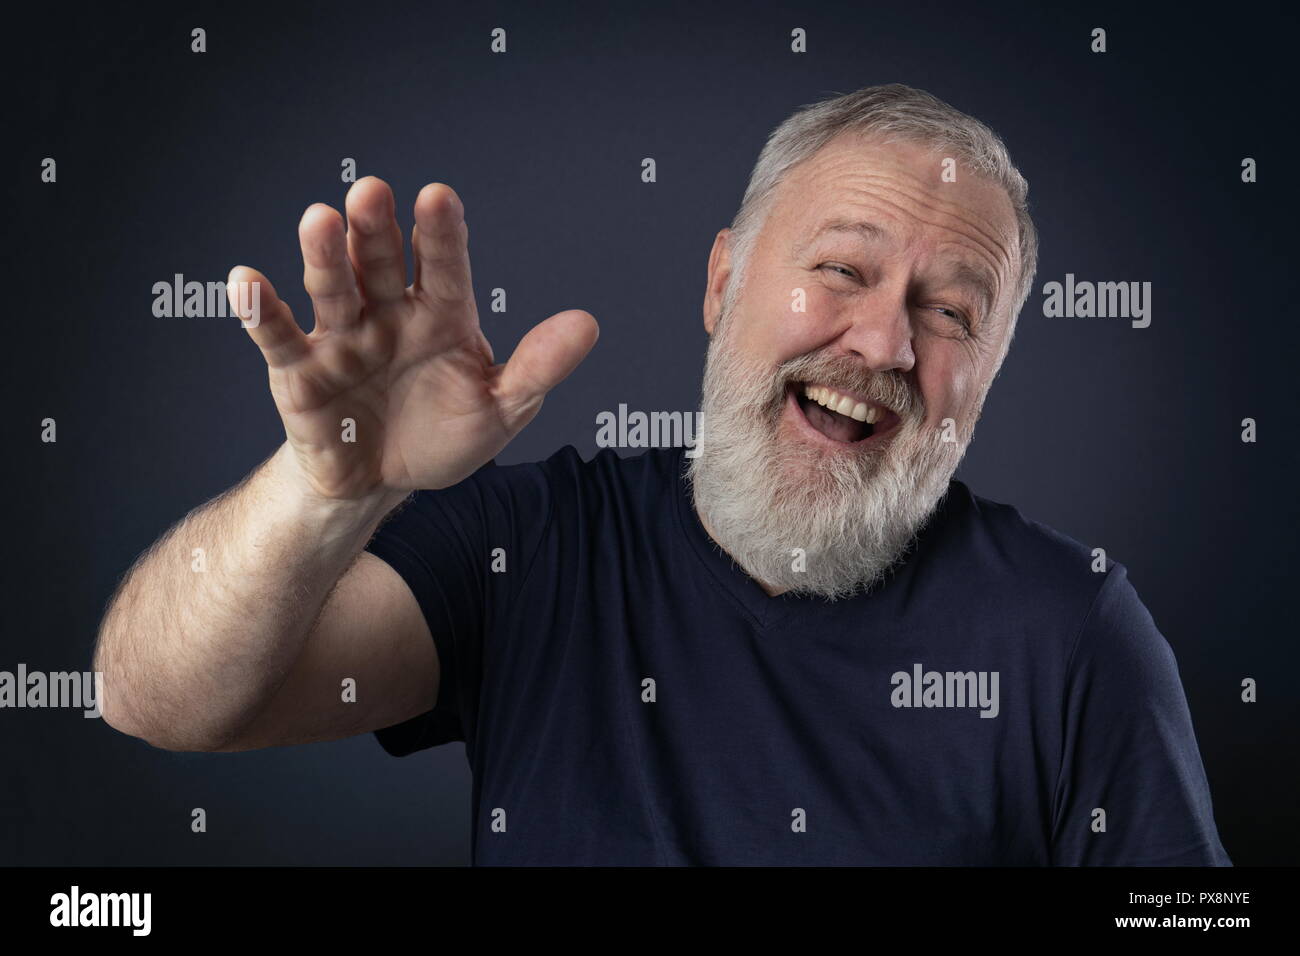 Vieil homme avec barbe grise rire avec sa paume vers le haut Banque D'Images